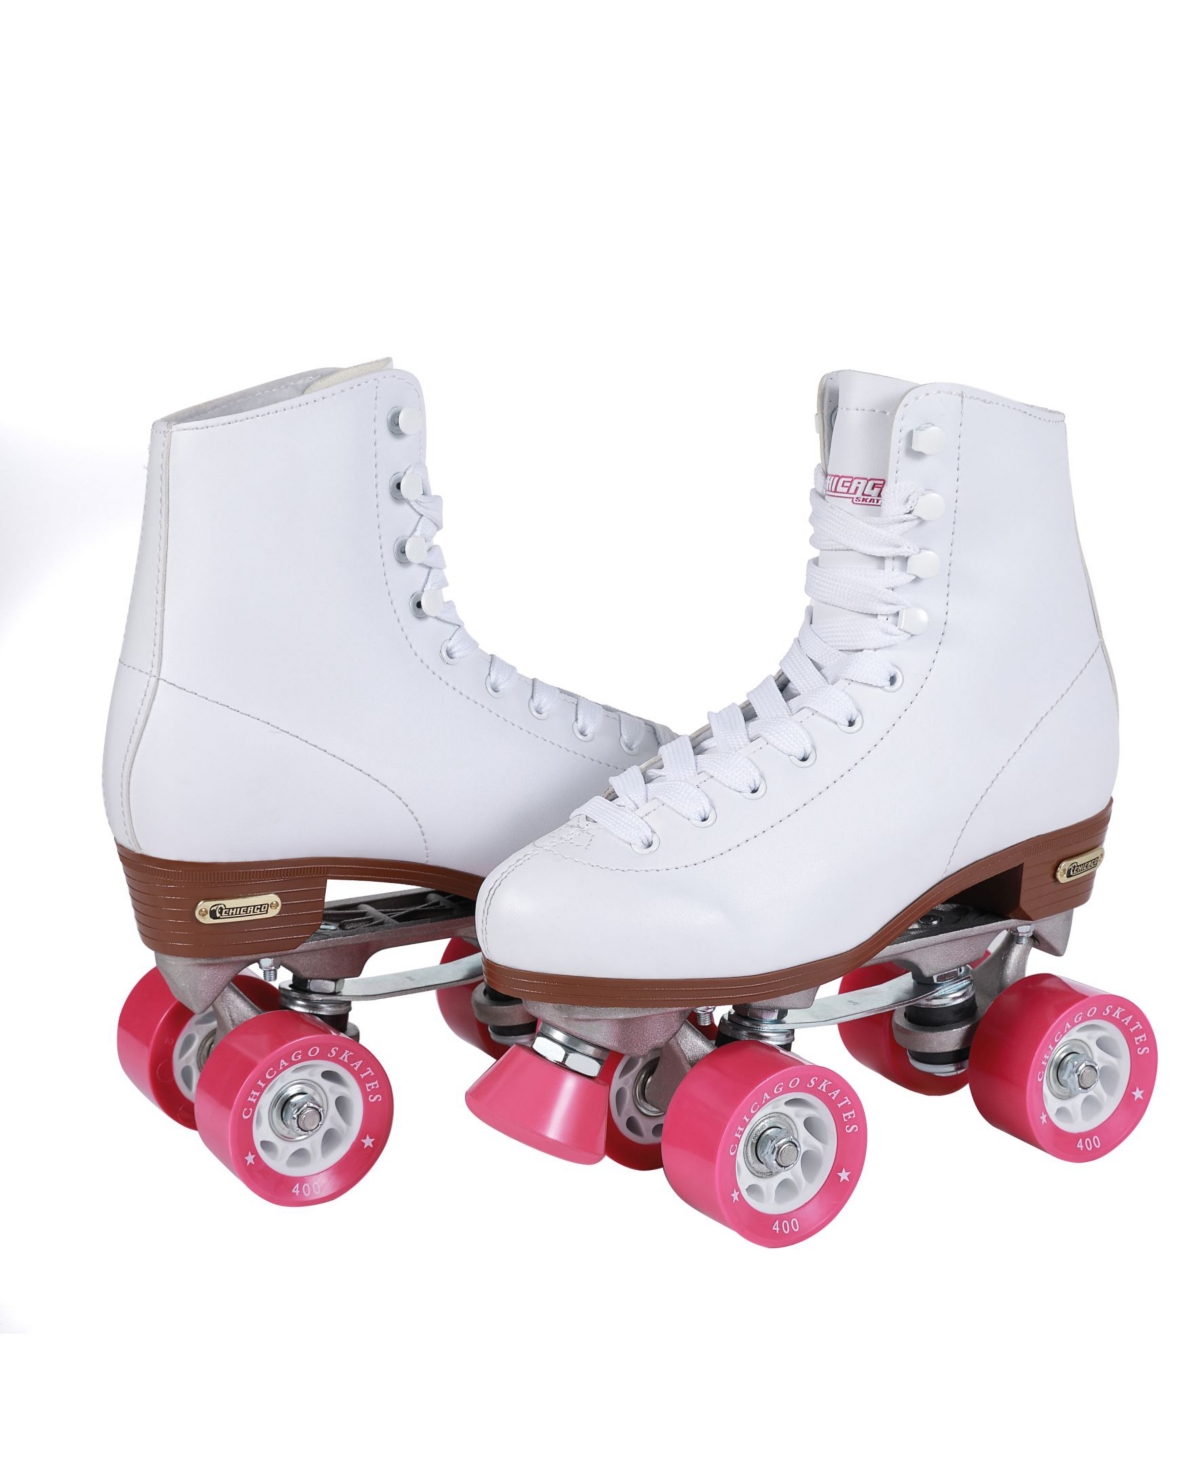 Women's Rink Roller Skates - Size 6 - White